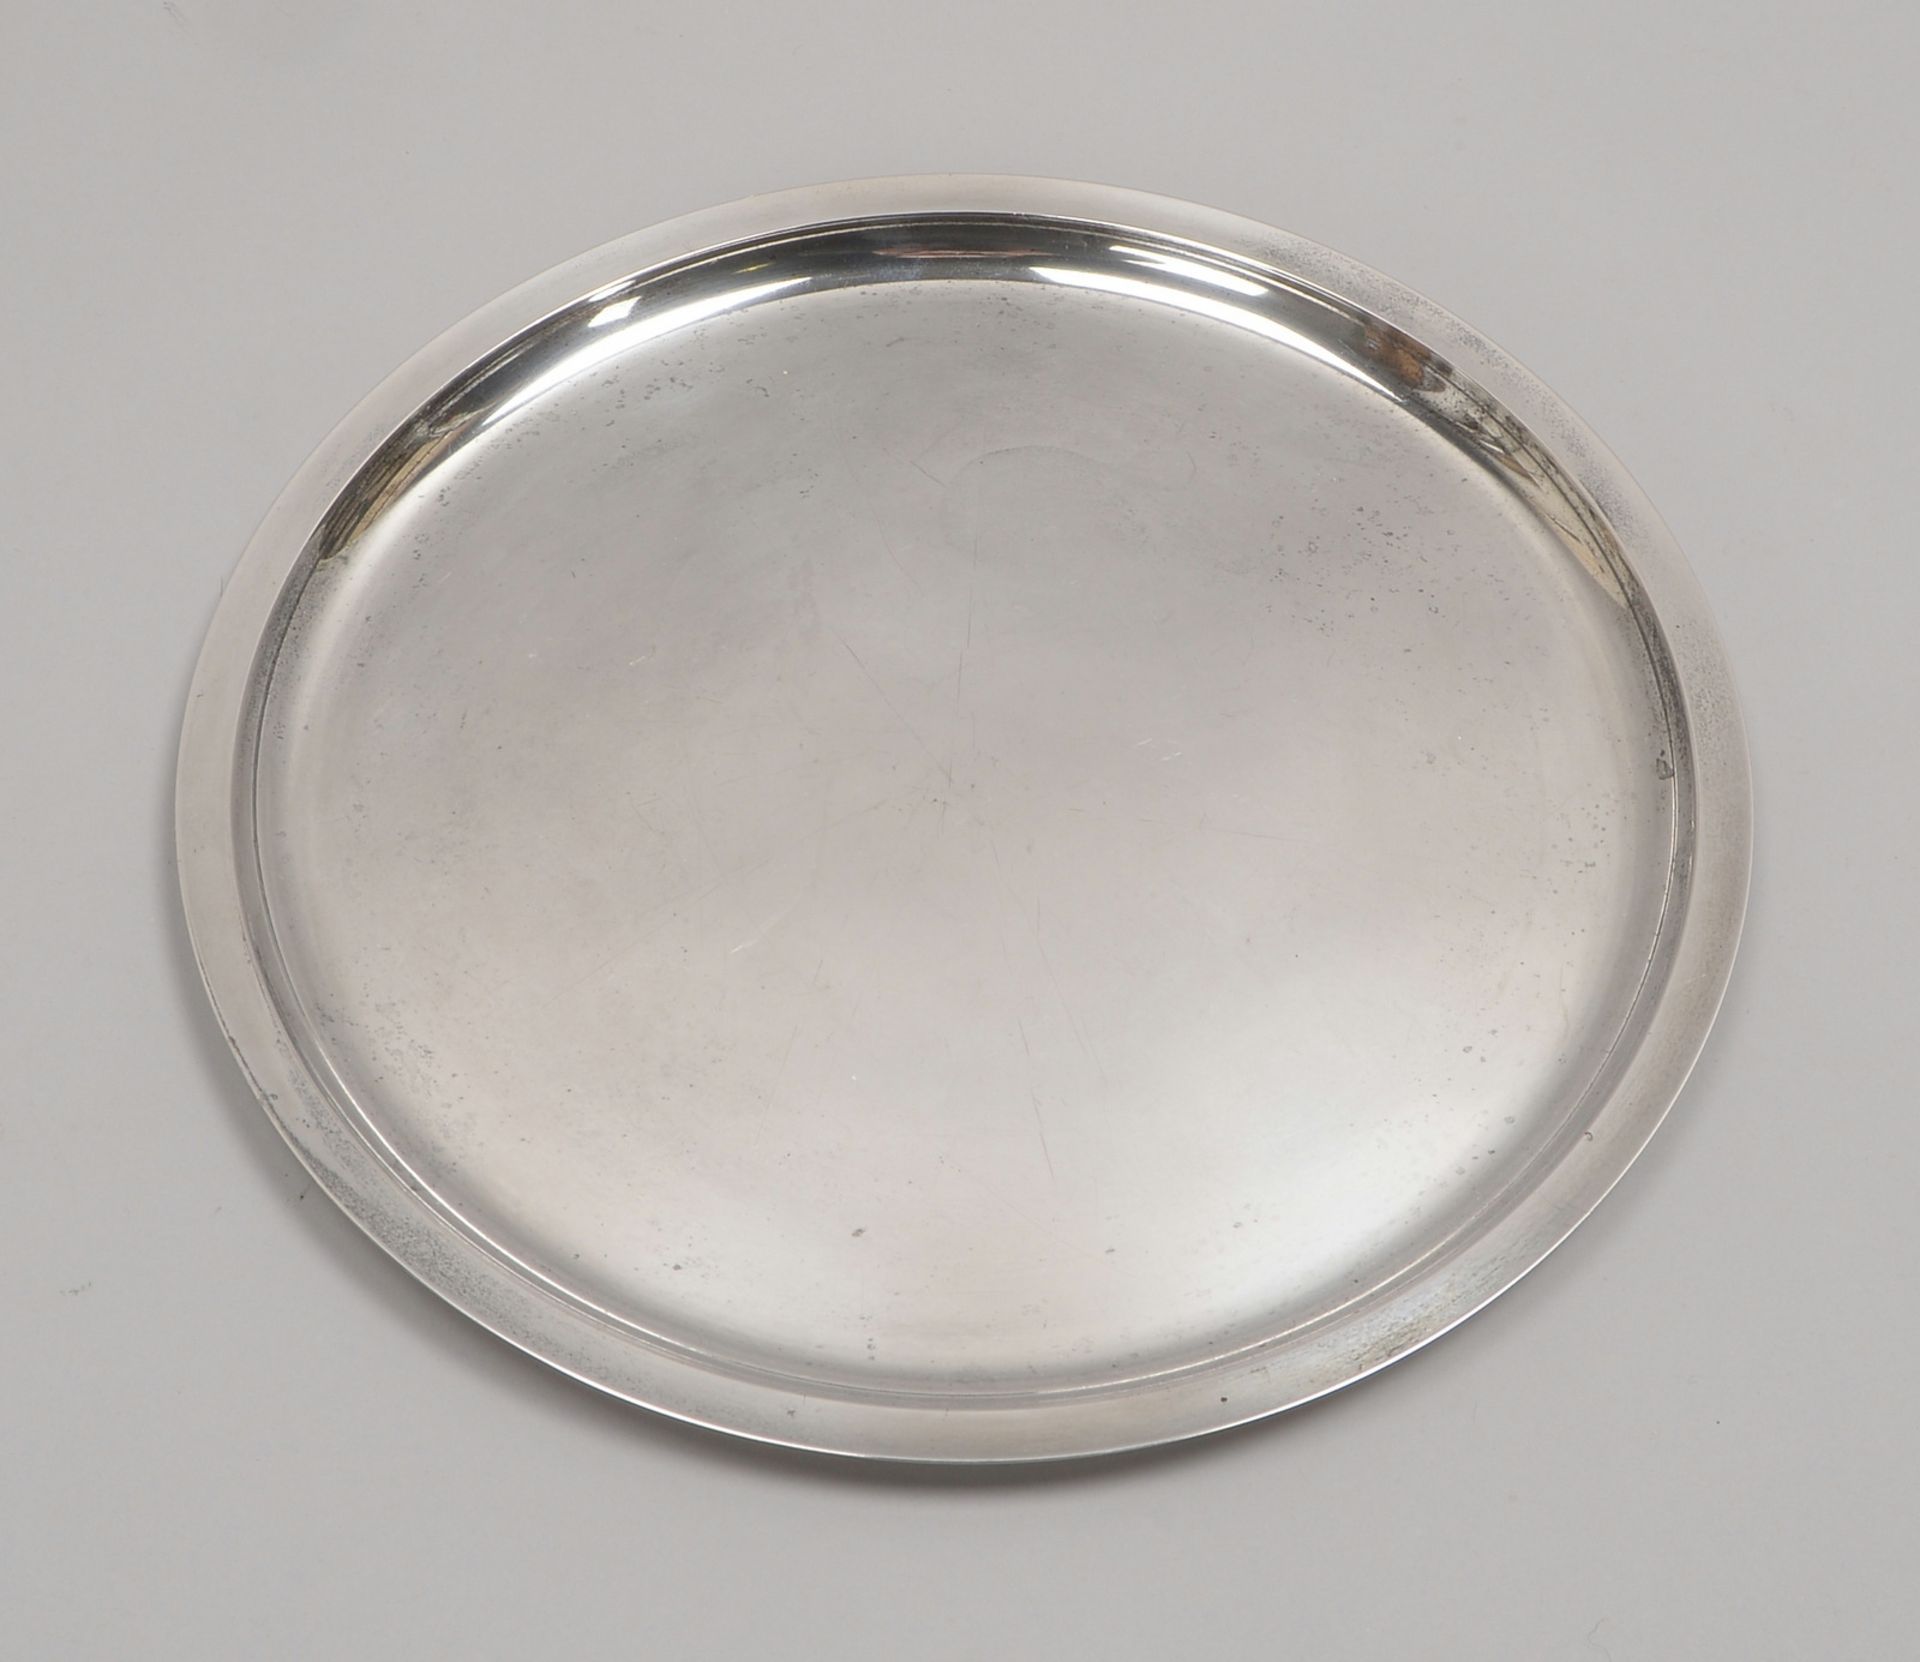 Wilkens, Tablett, 835 Silber, runde Form, Durchmesser Ø 30 cm, Gewicht 608 g